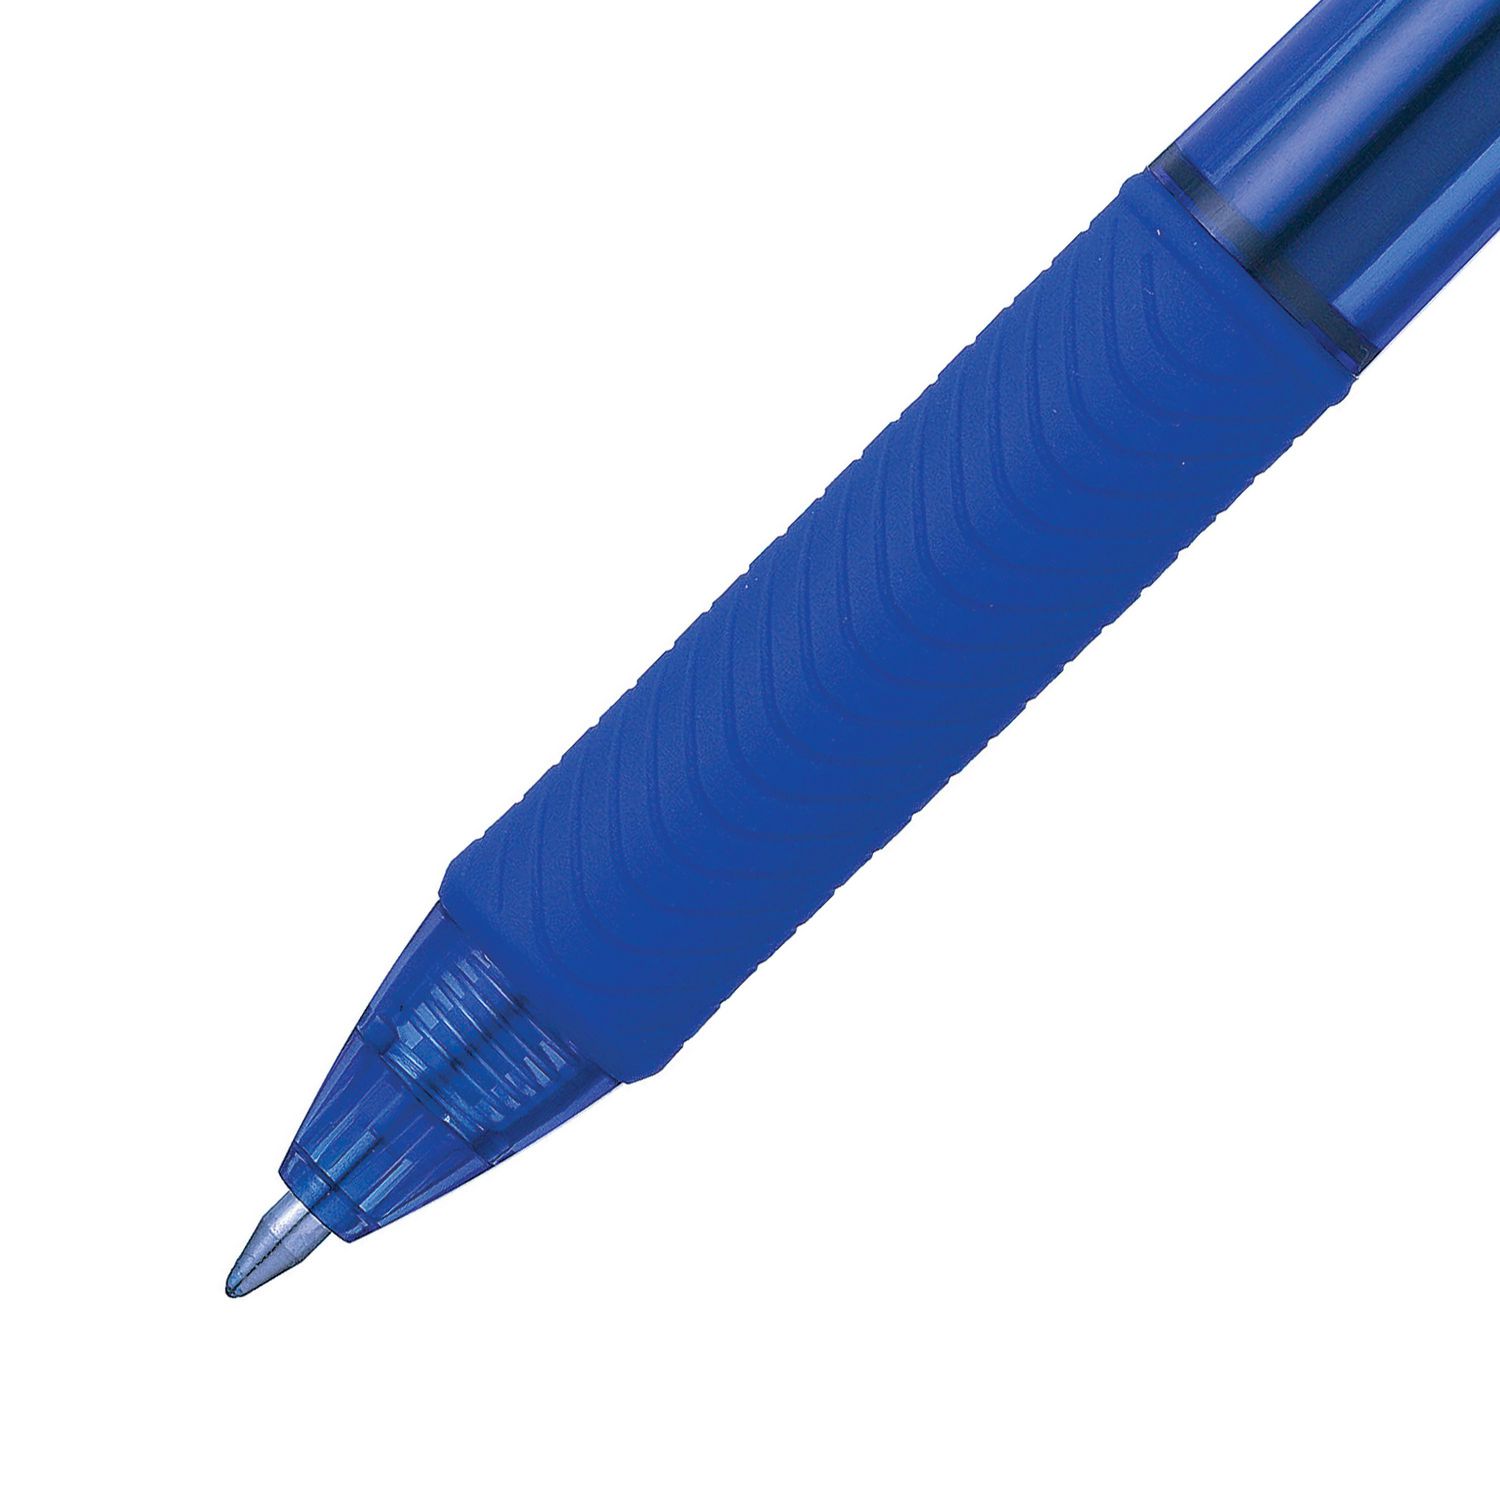 Pentel EnerGel X Retractable Liquid Gel Rollerball Pen, 0.7mm